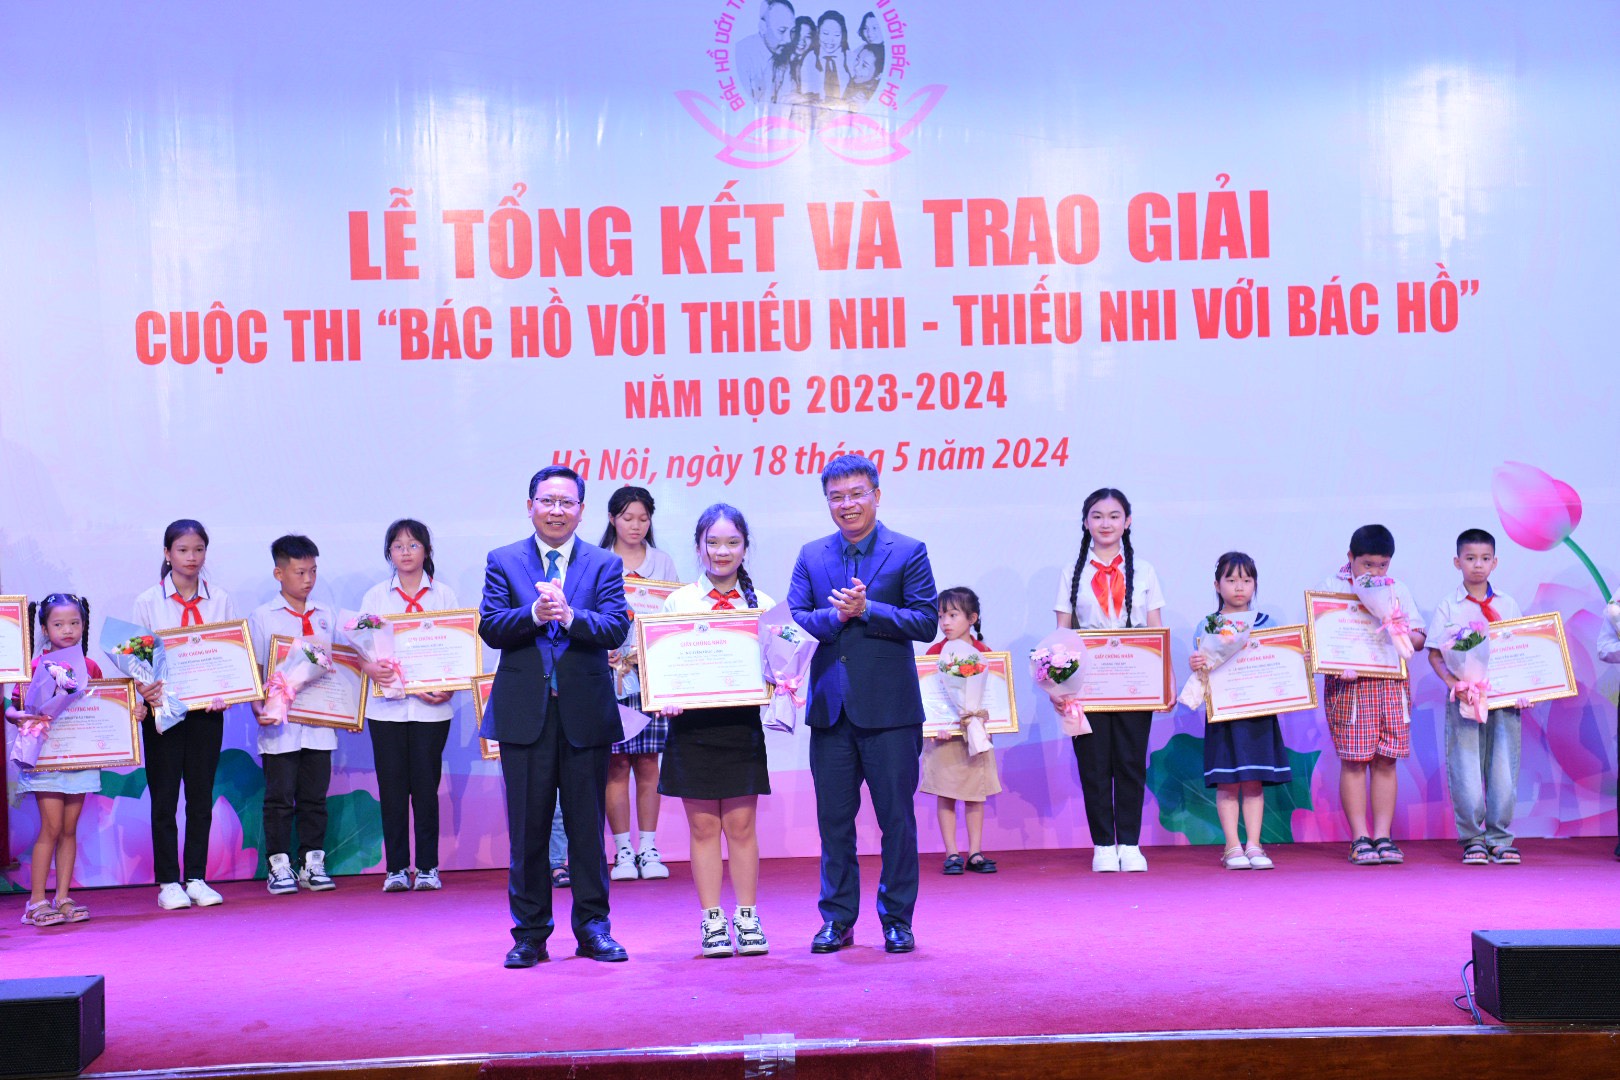 Tiến sĩ Trần Văn Đạt và nhà văn, nhà báo Nguyễn Phan Khuê trao giải Nhất tập thể và giải Nhất cá nhân của cuộc thi.